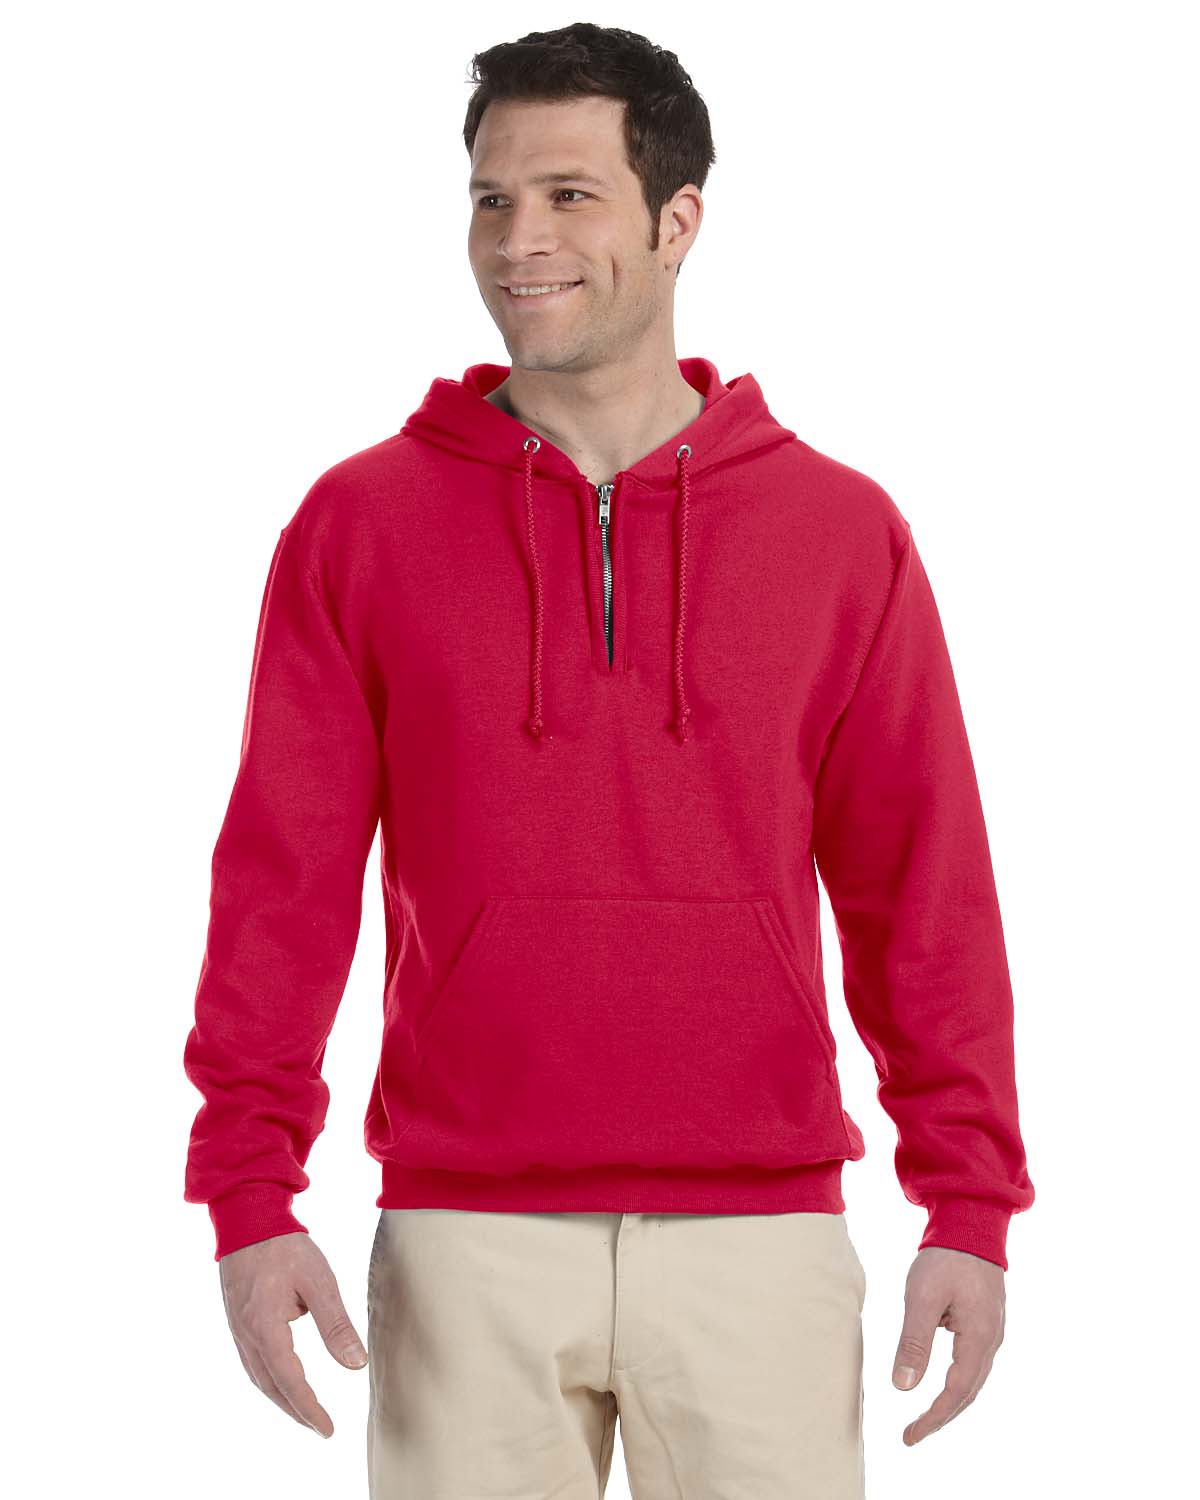 Jerzees 994 - Adult NuBlend Quarter-Zip Hooded Sweatshirt $15.93